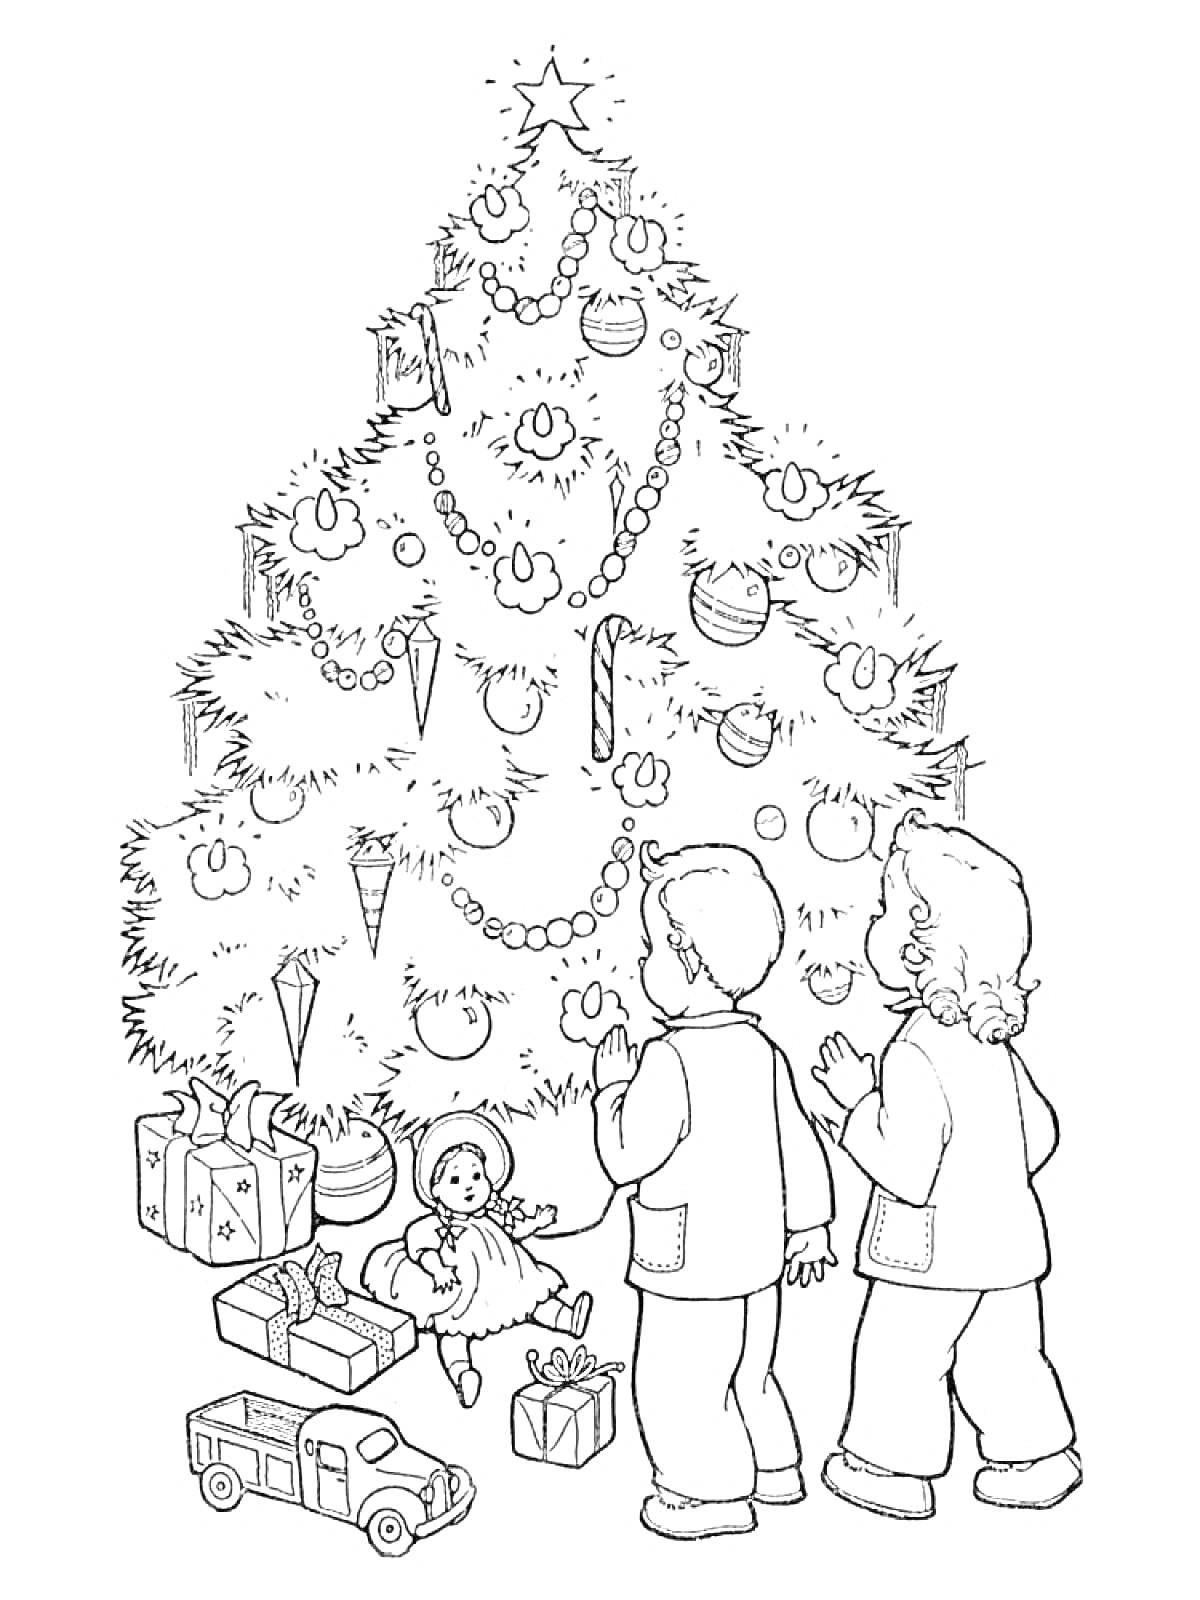 Елка с игрушками, гирляндами и подарками, дети смотрят на украшенную елку.